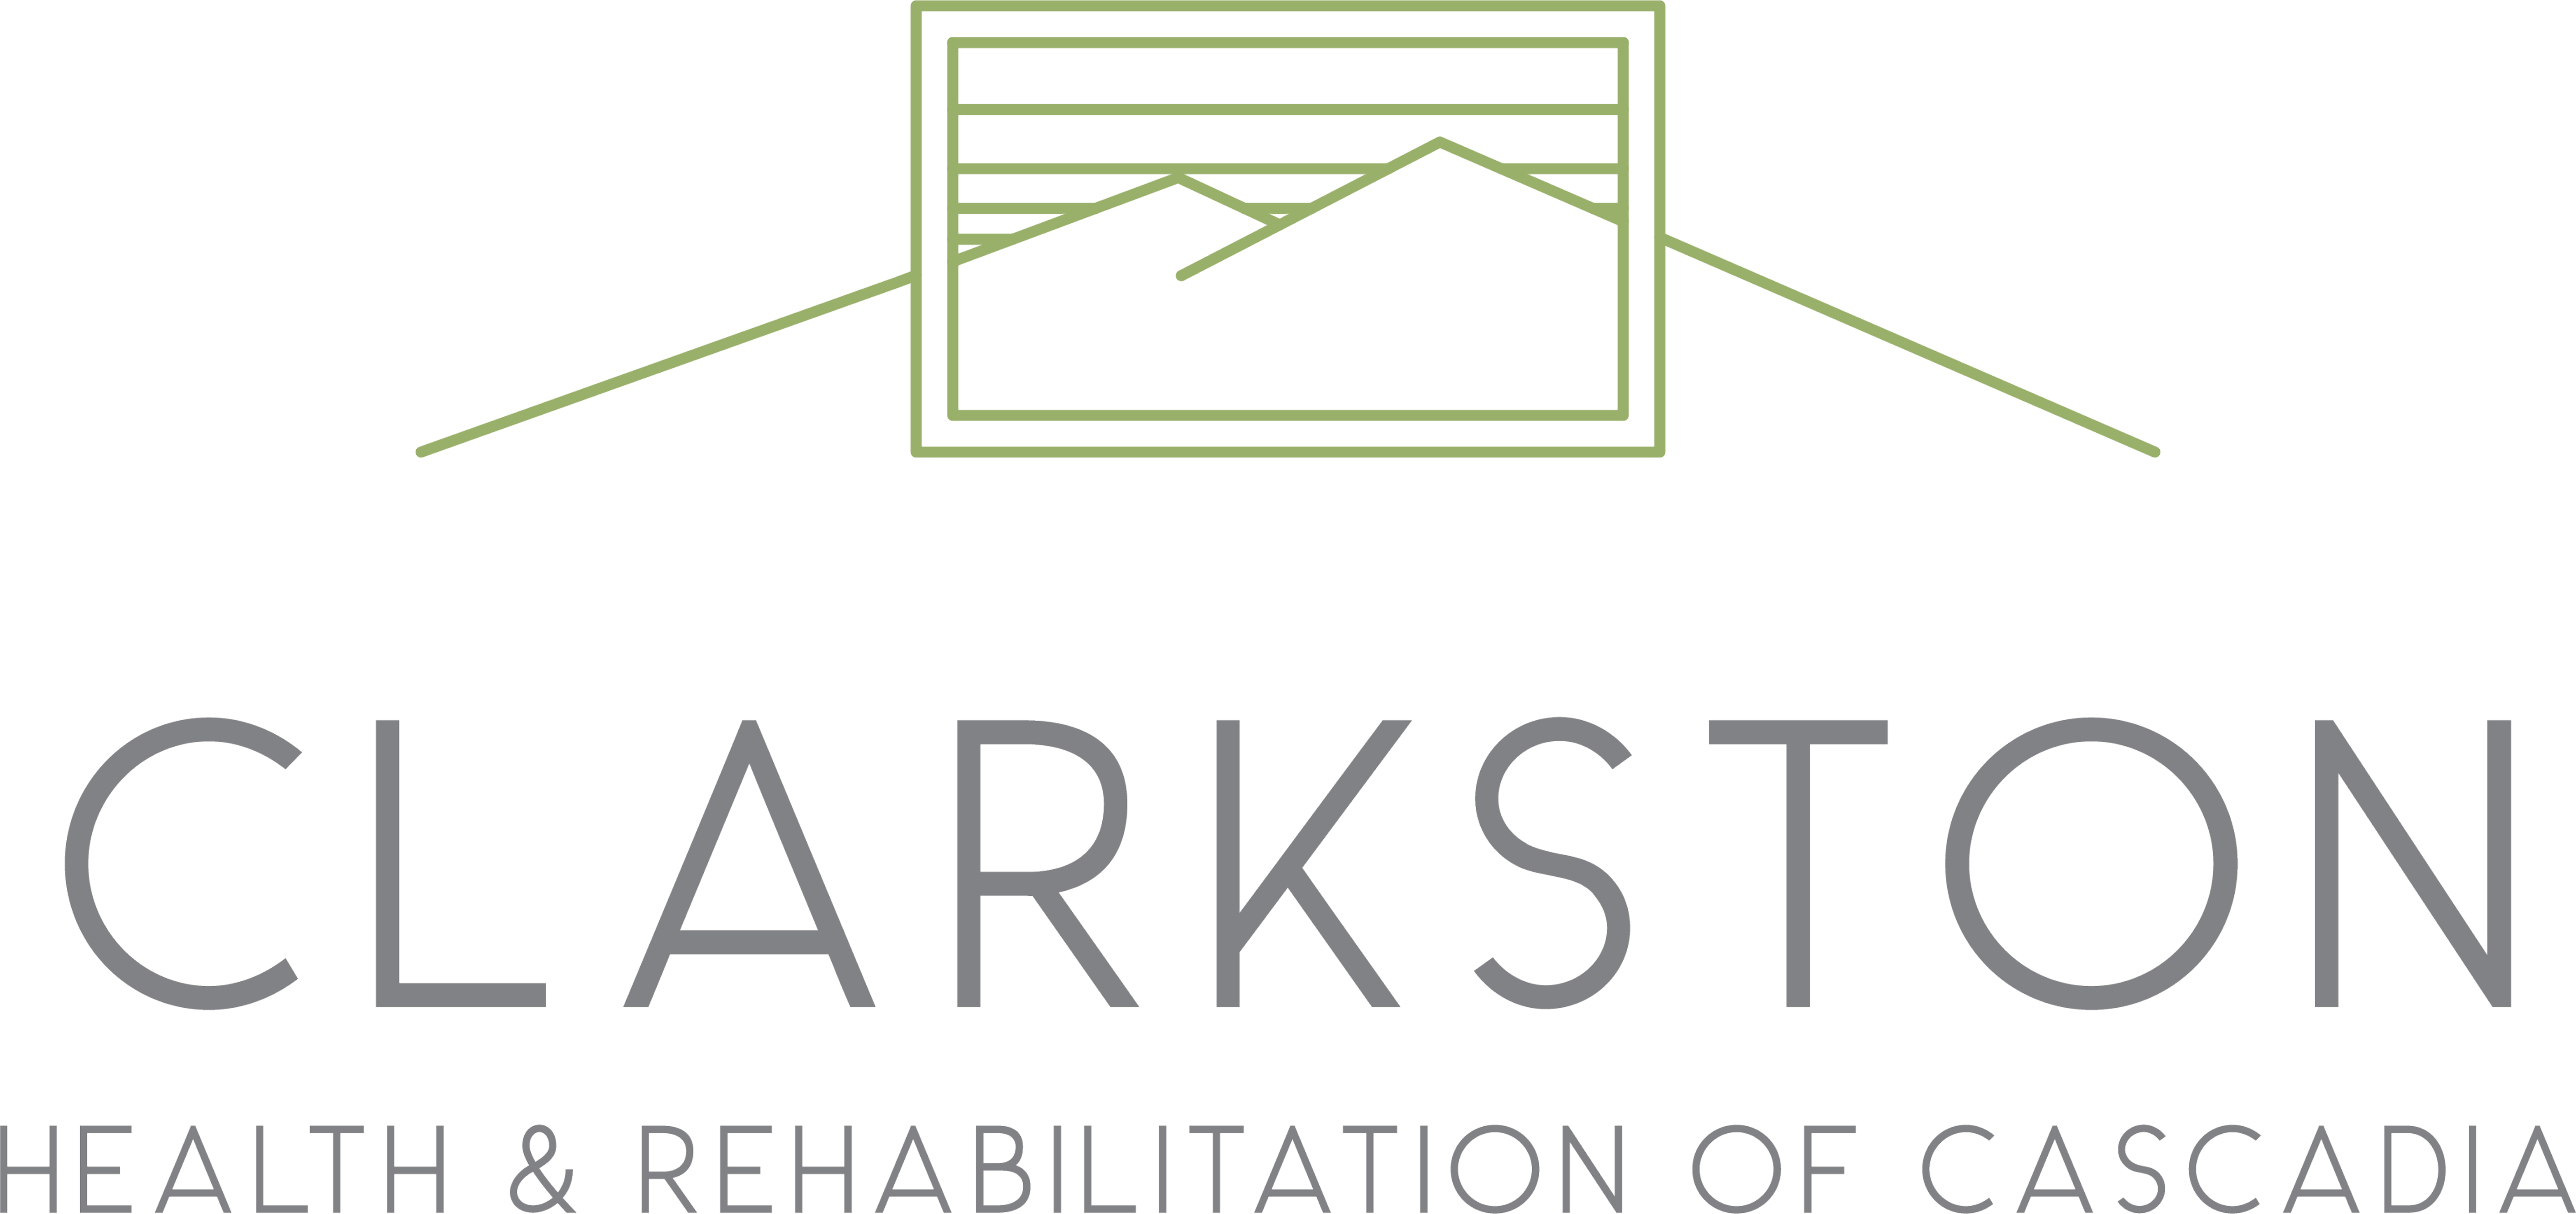 Clarkston Health and Rehabilitation of Cascadia